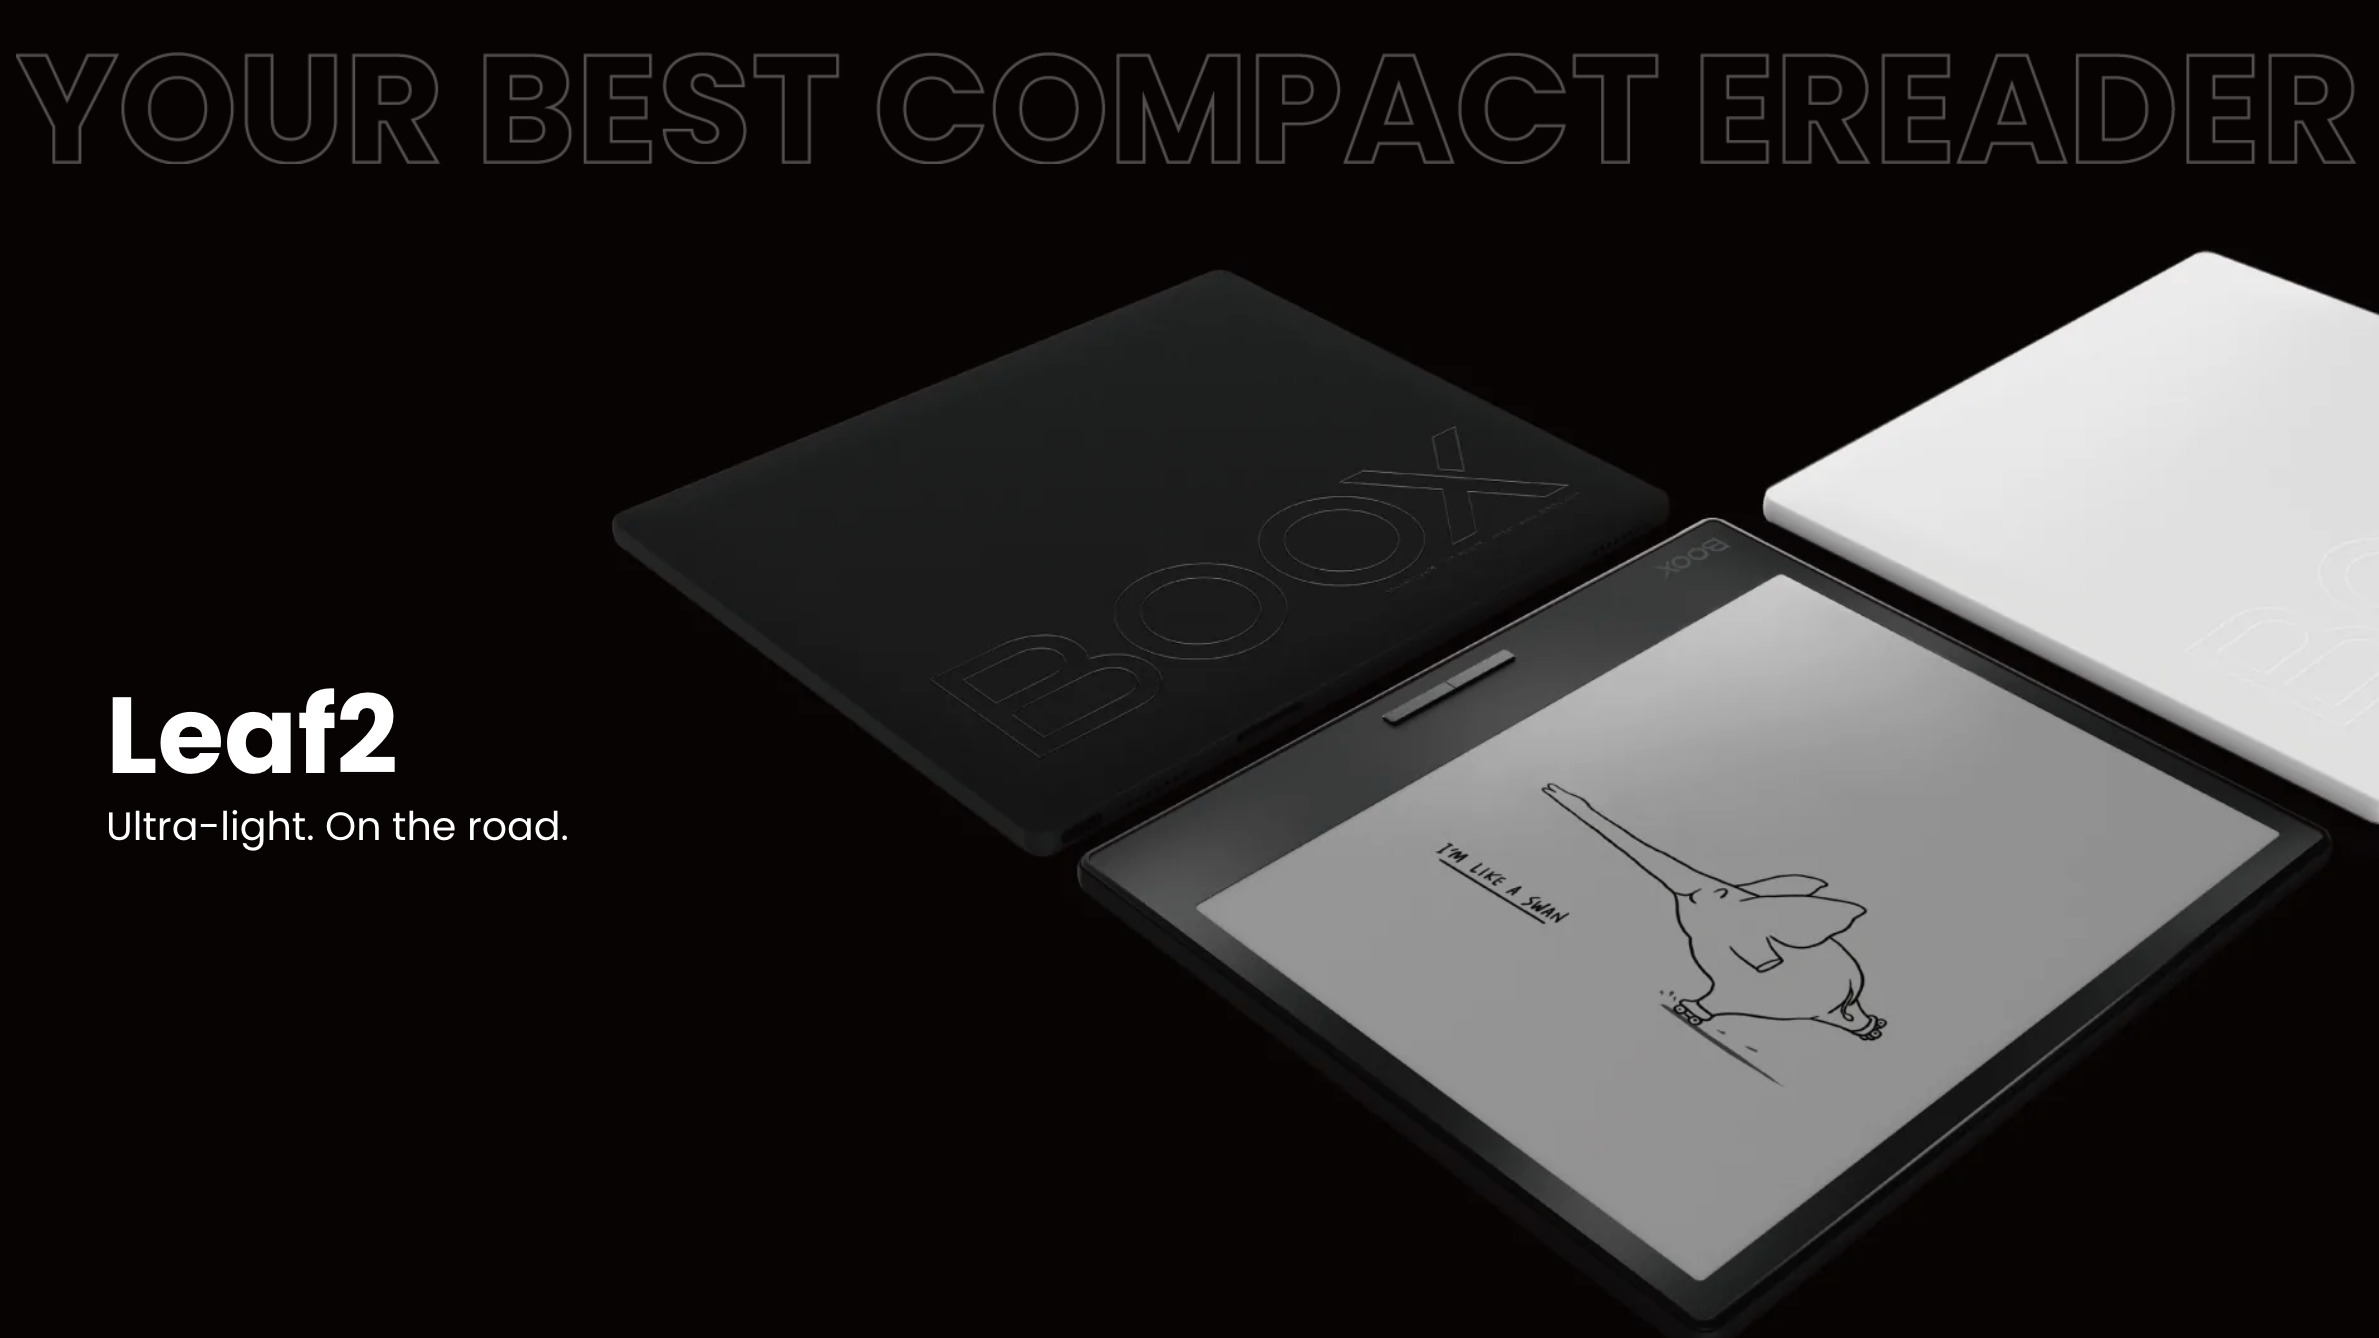 【比較】7インチの電子ペーパータブレット「BOOX Leaf2」と初代「BOOX Leaf」の違い | きなこぱん